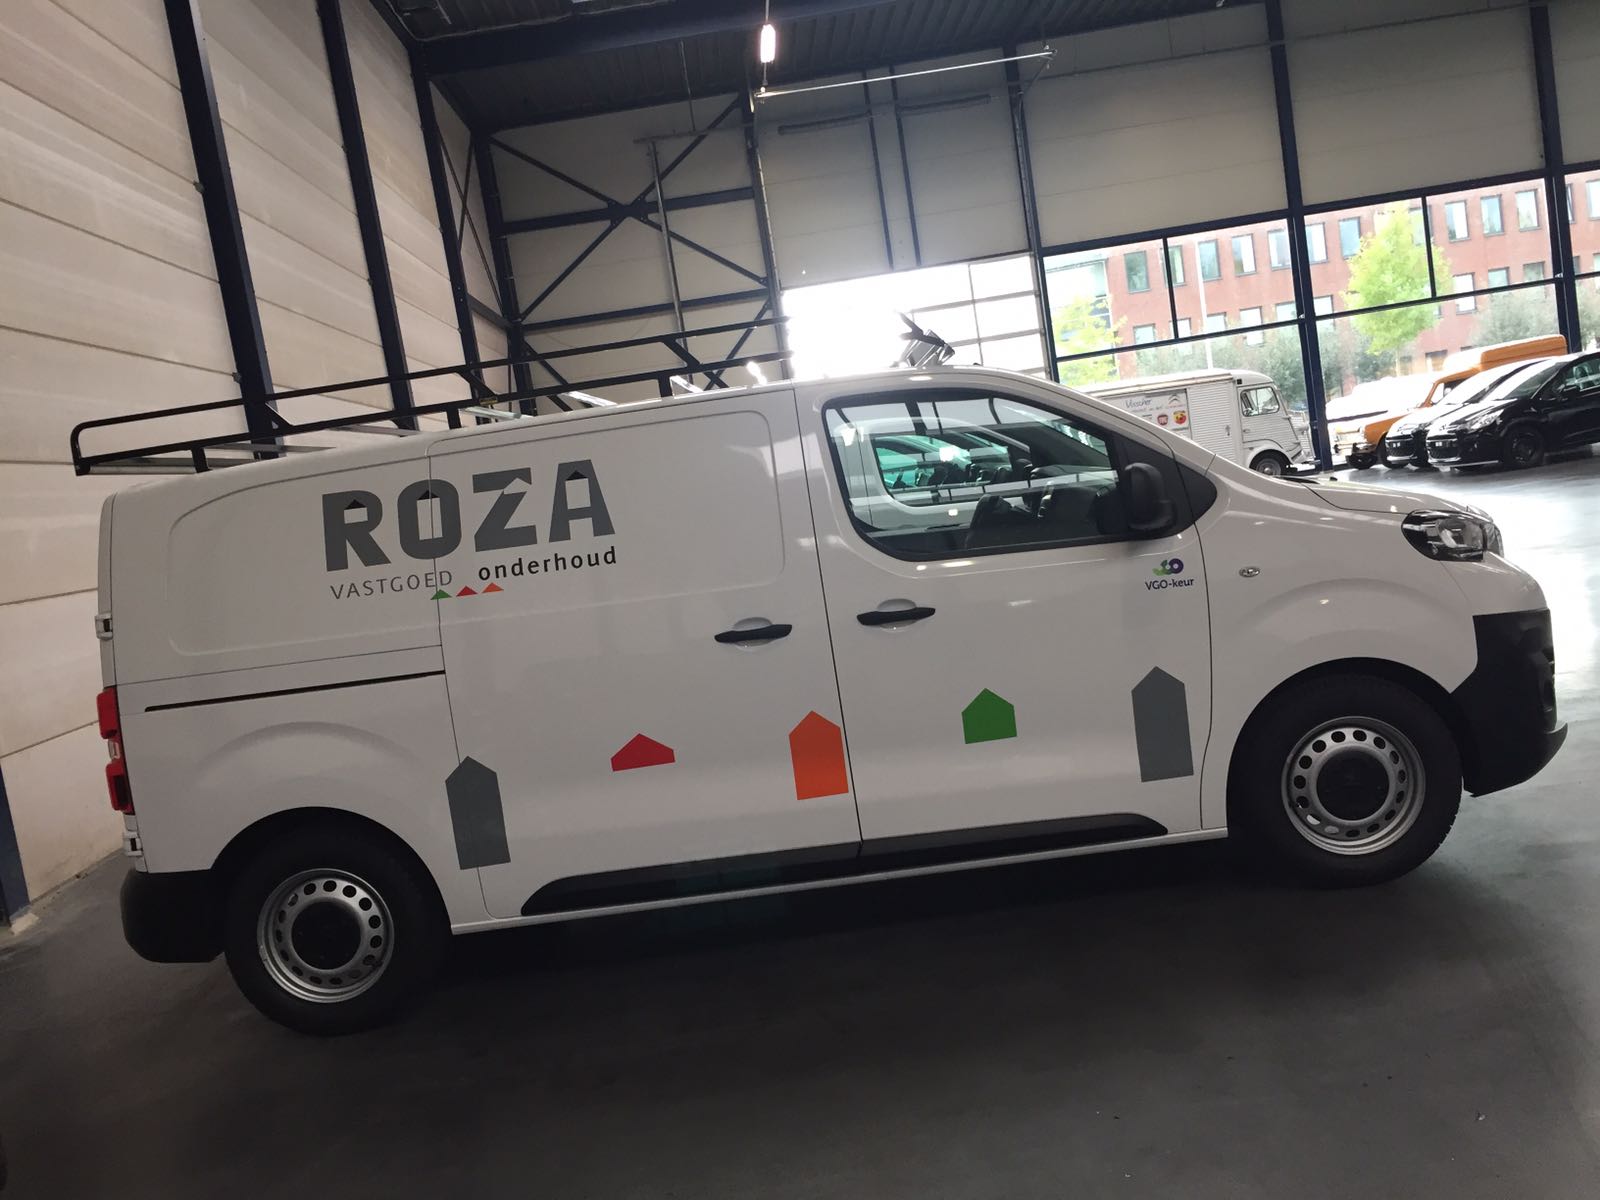 Auto belettering Roza vastgoed en onderhoud